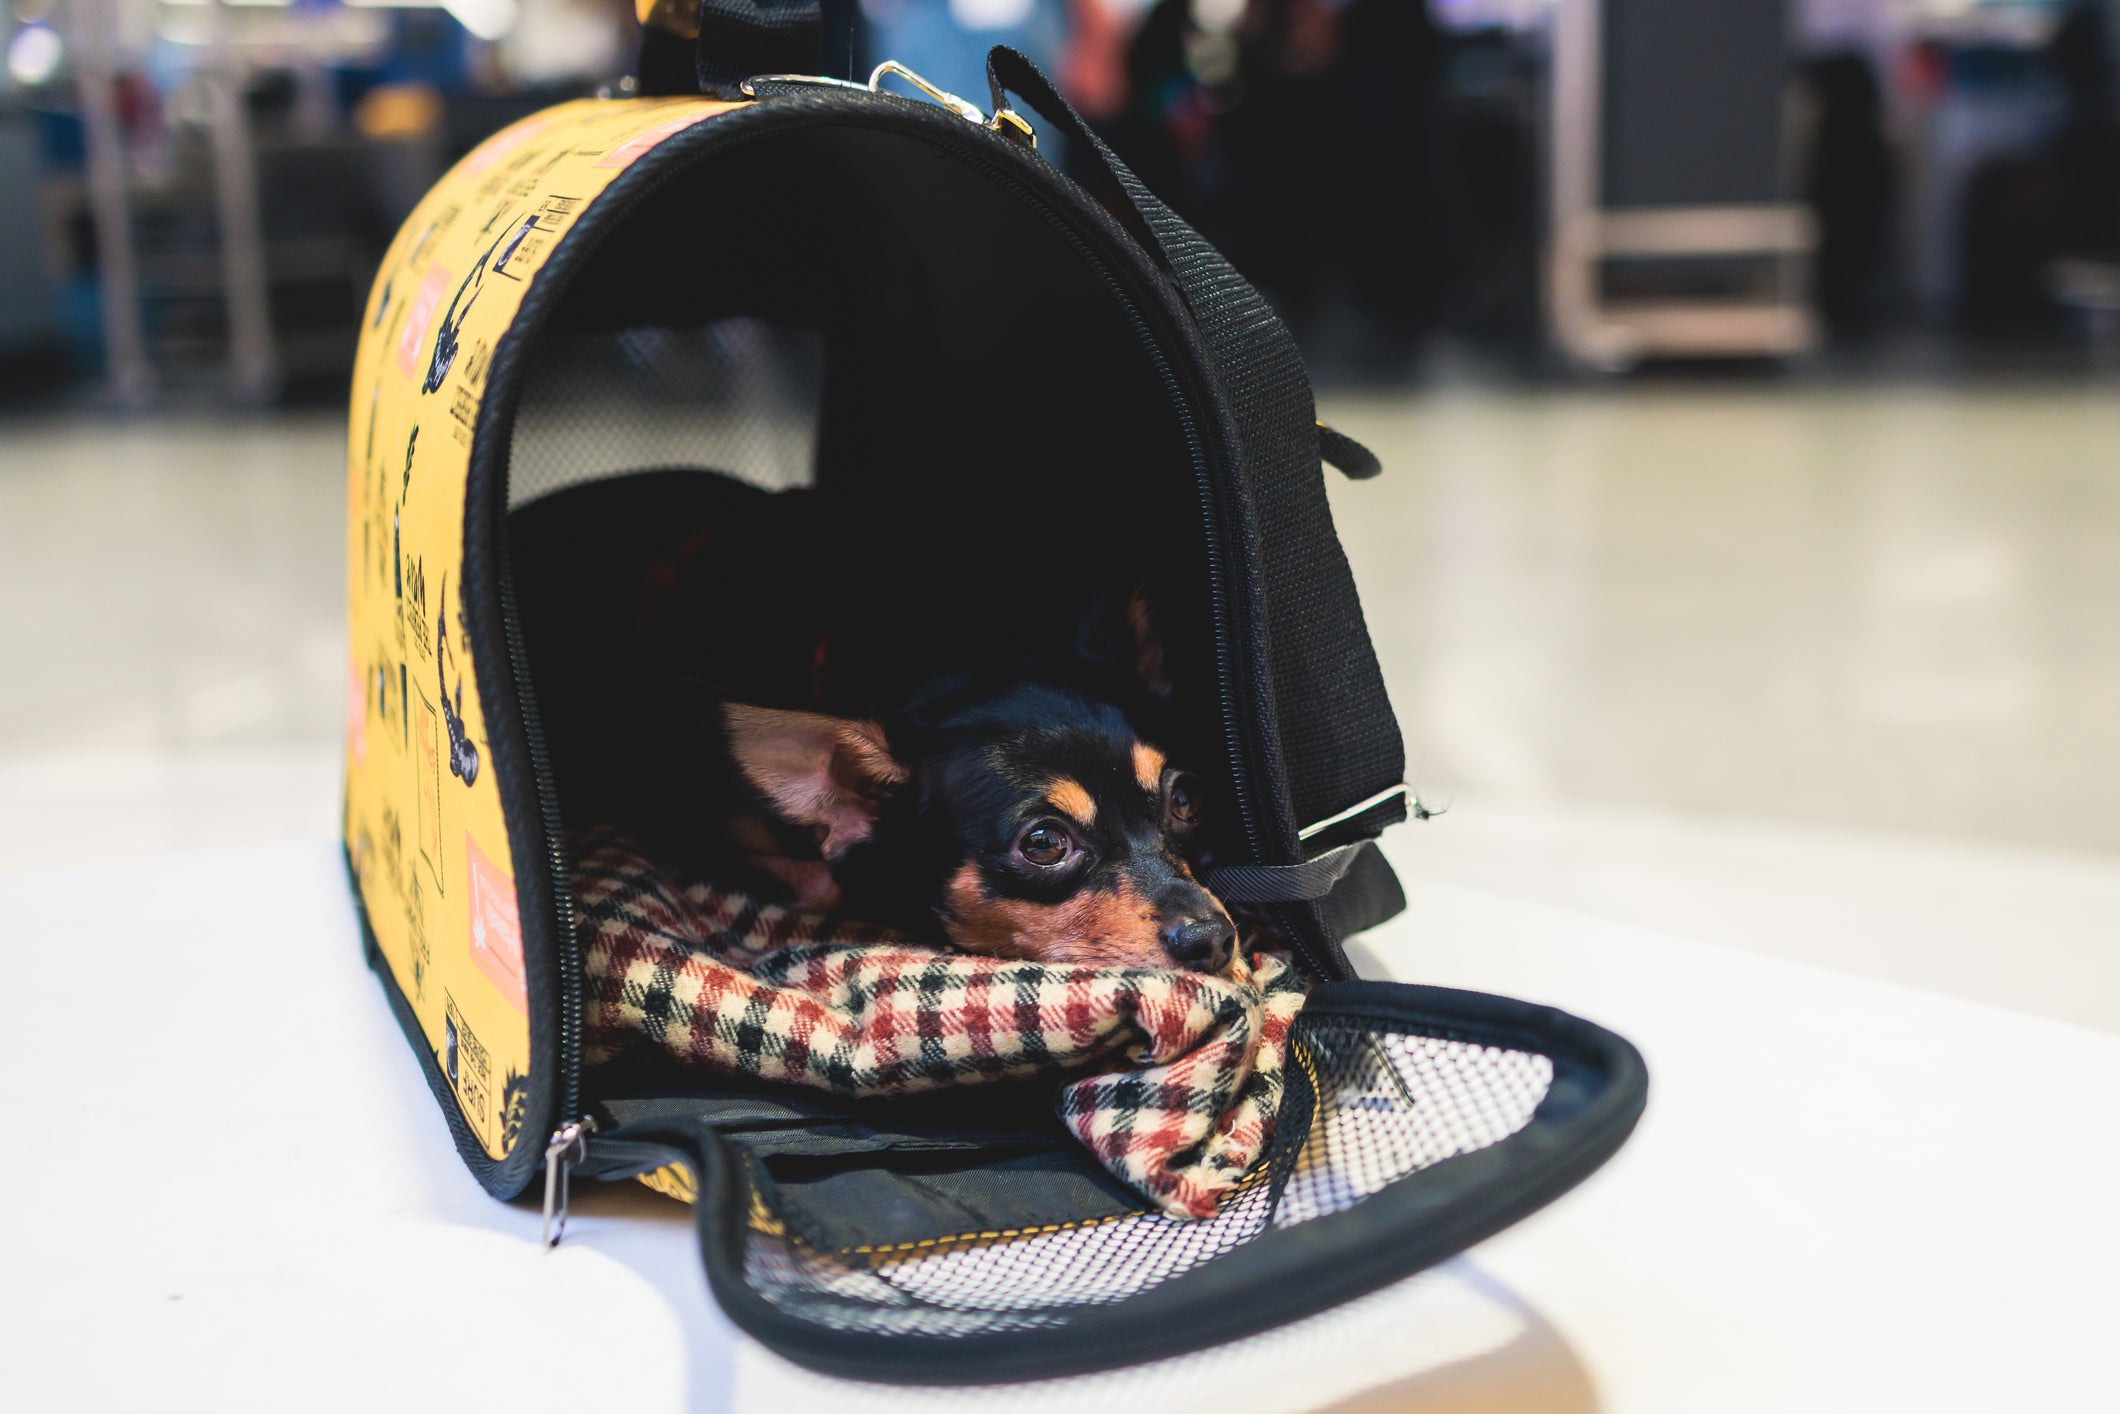  Pinscher deitado dentro de uma caixa de transporte para cachorro no aeroporto